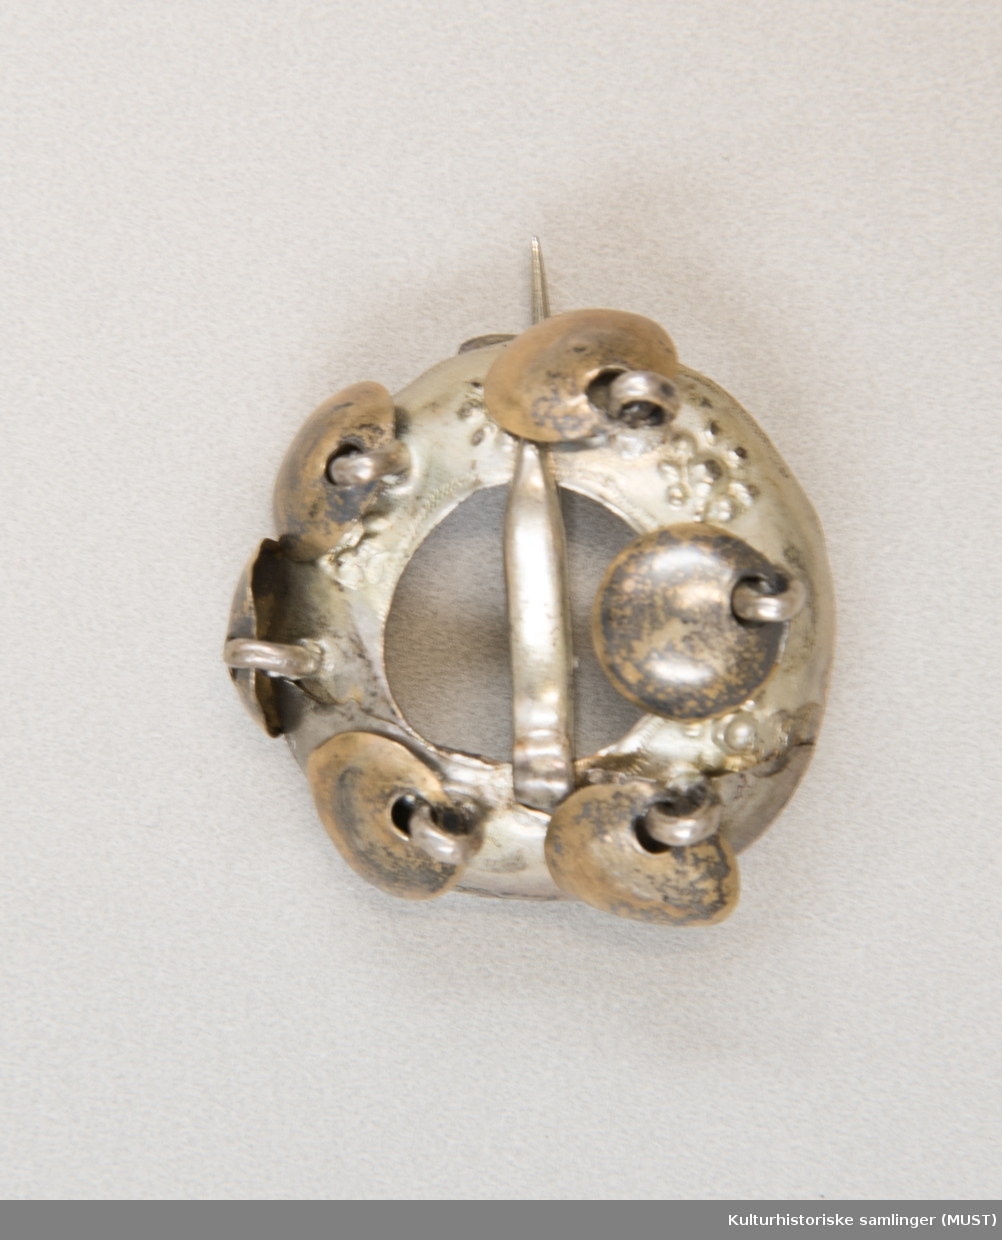 Skjoldformet ring med 6 løv. Blomsterlingene dekor mellom løvet. 
Glatt nål. 
På baksiden er den en nål som antas og være sekundær. Bursprettene har opprinnelig ikke nål på baksiden, men på mange spretter er det satt på en mer moderne lukkemekanisme i nyere tid. 